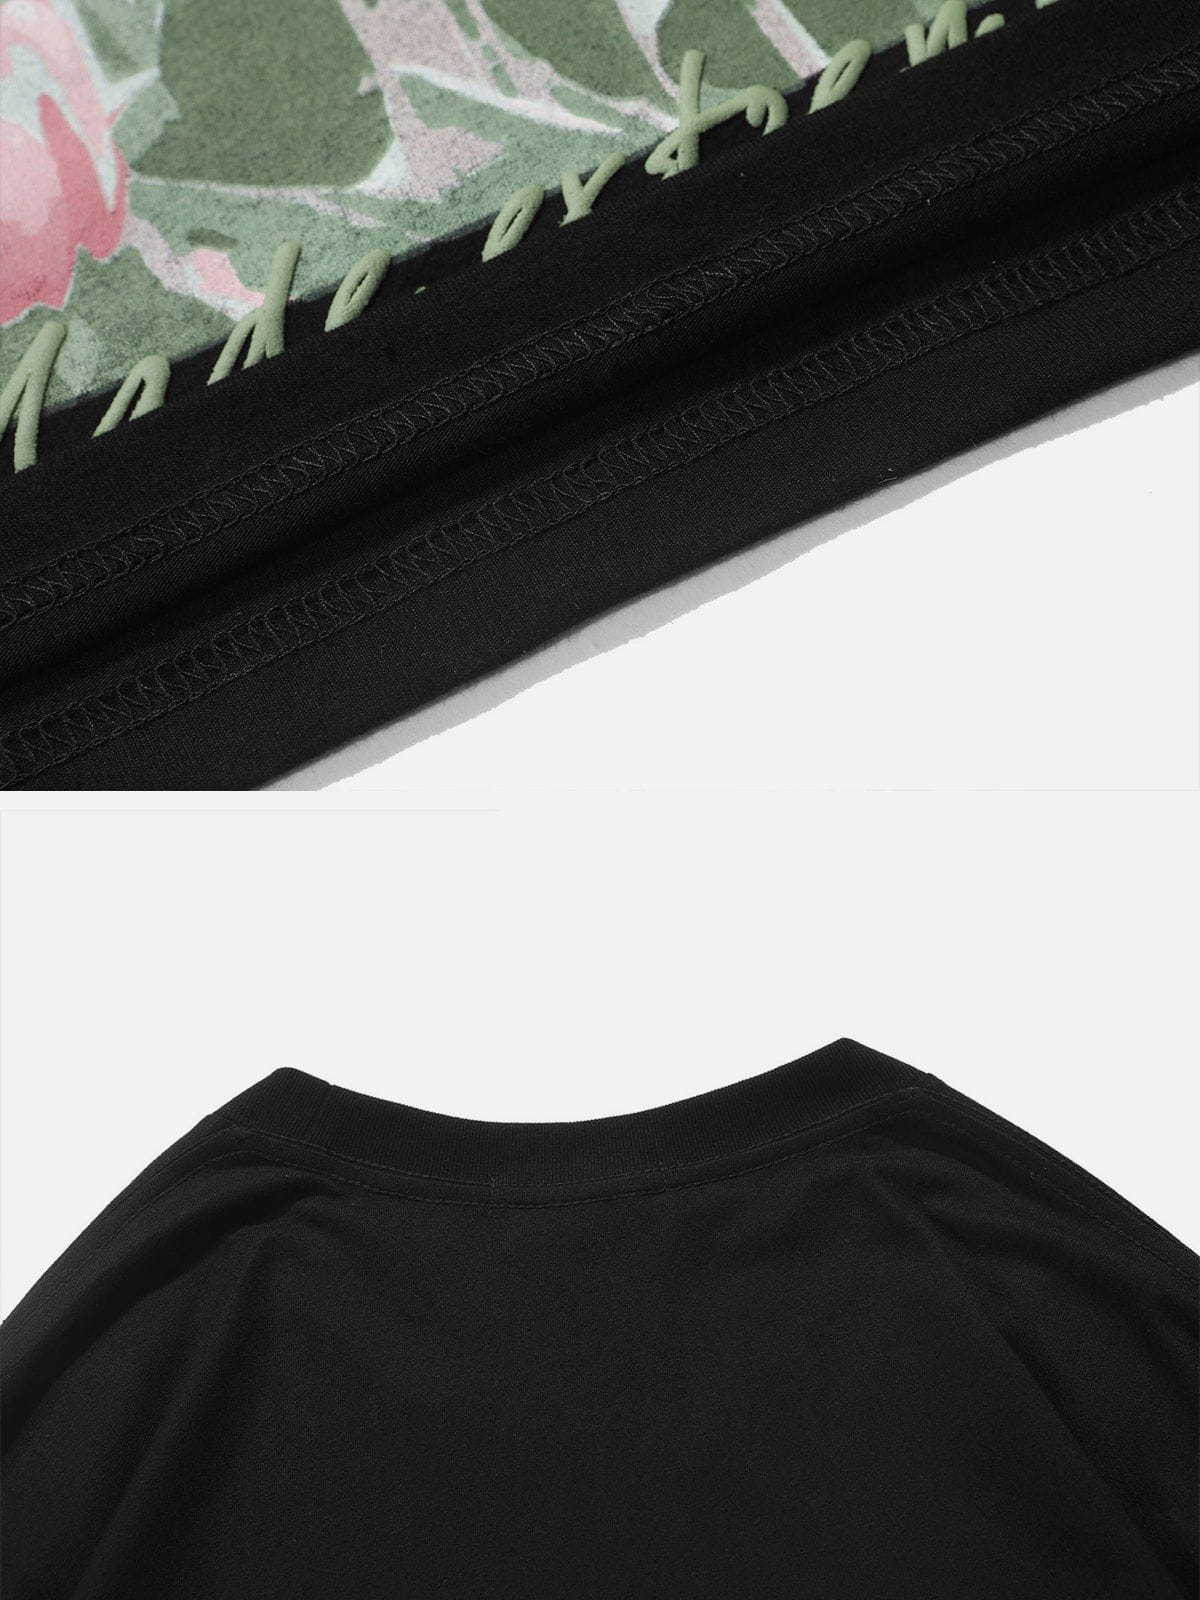 LUXENFY™ - Flower Field Print Sweatshirt luxenfy.com